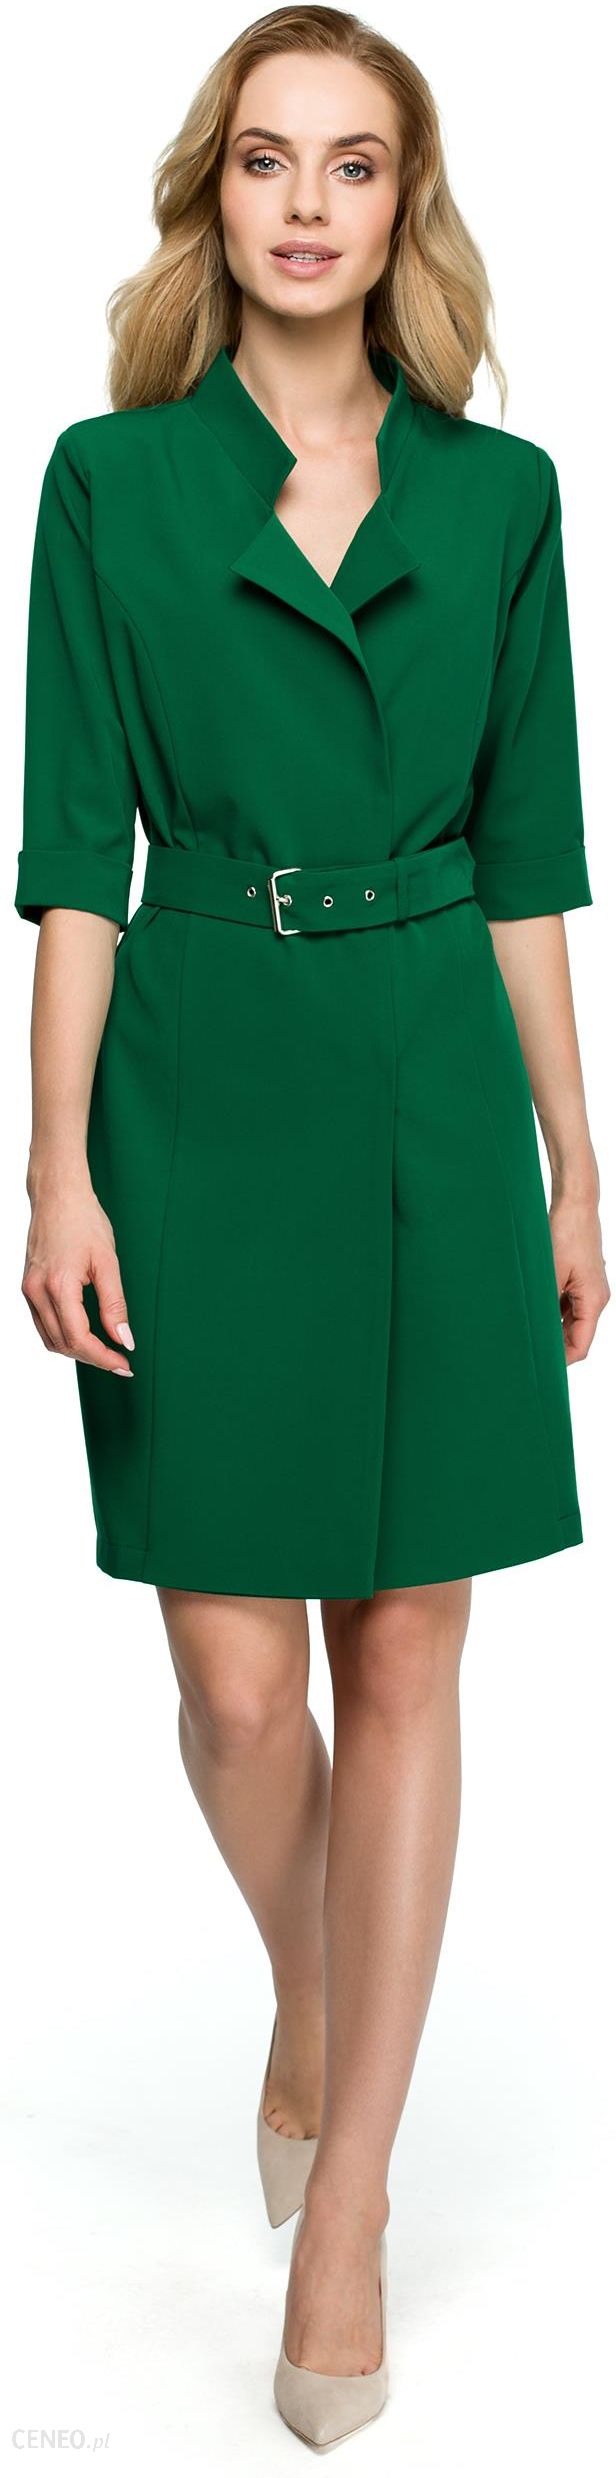 Style Stylowa sukienka z dużym kołnierzem Zielony M